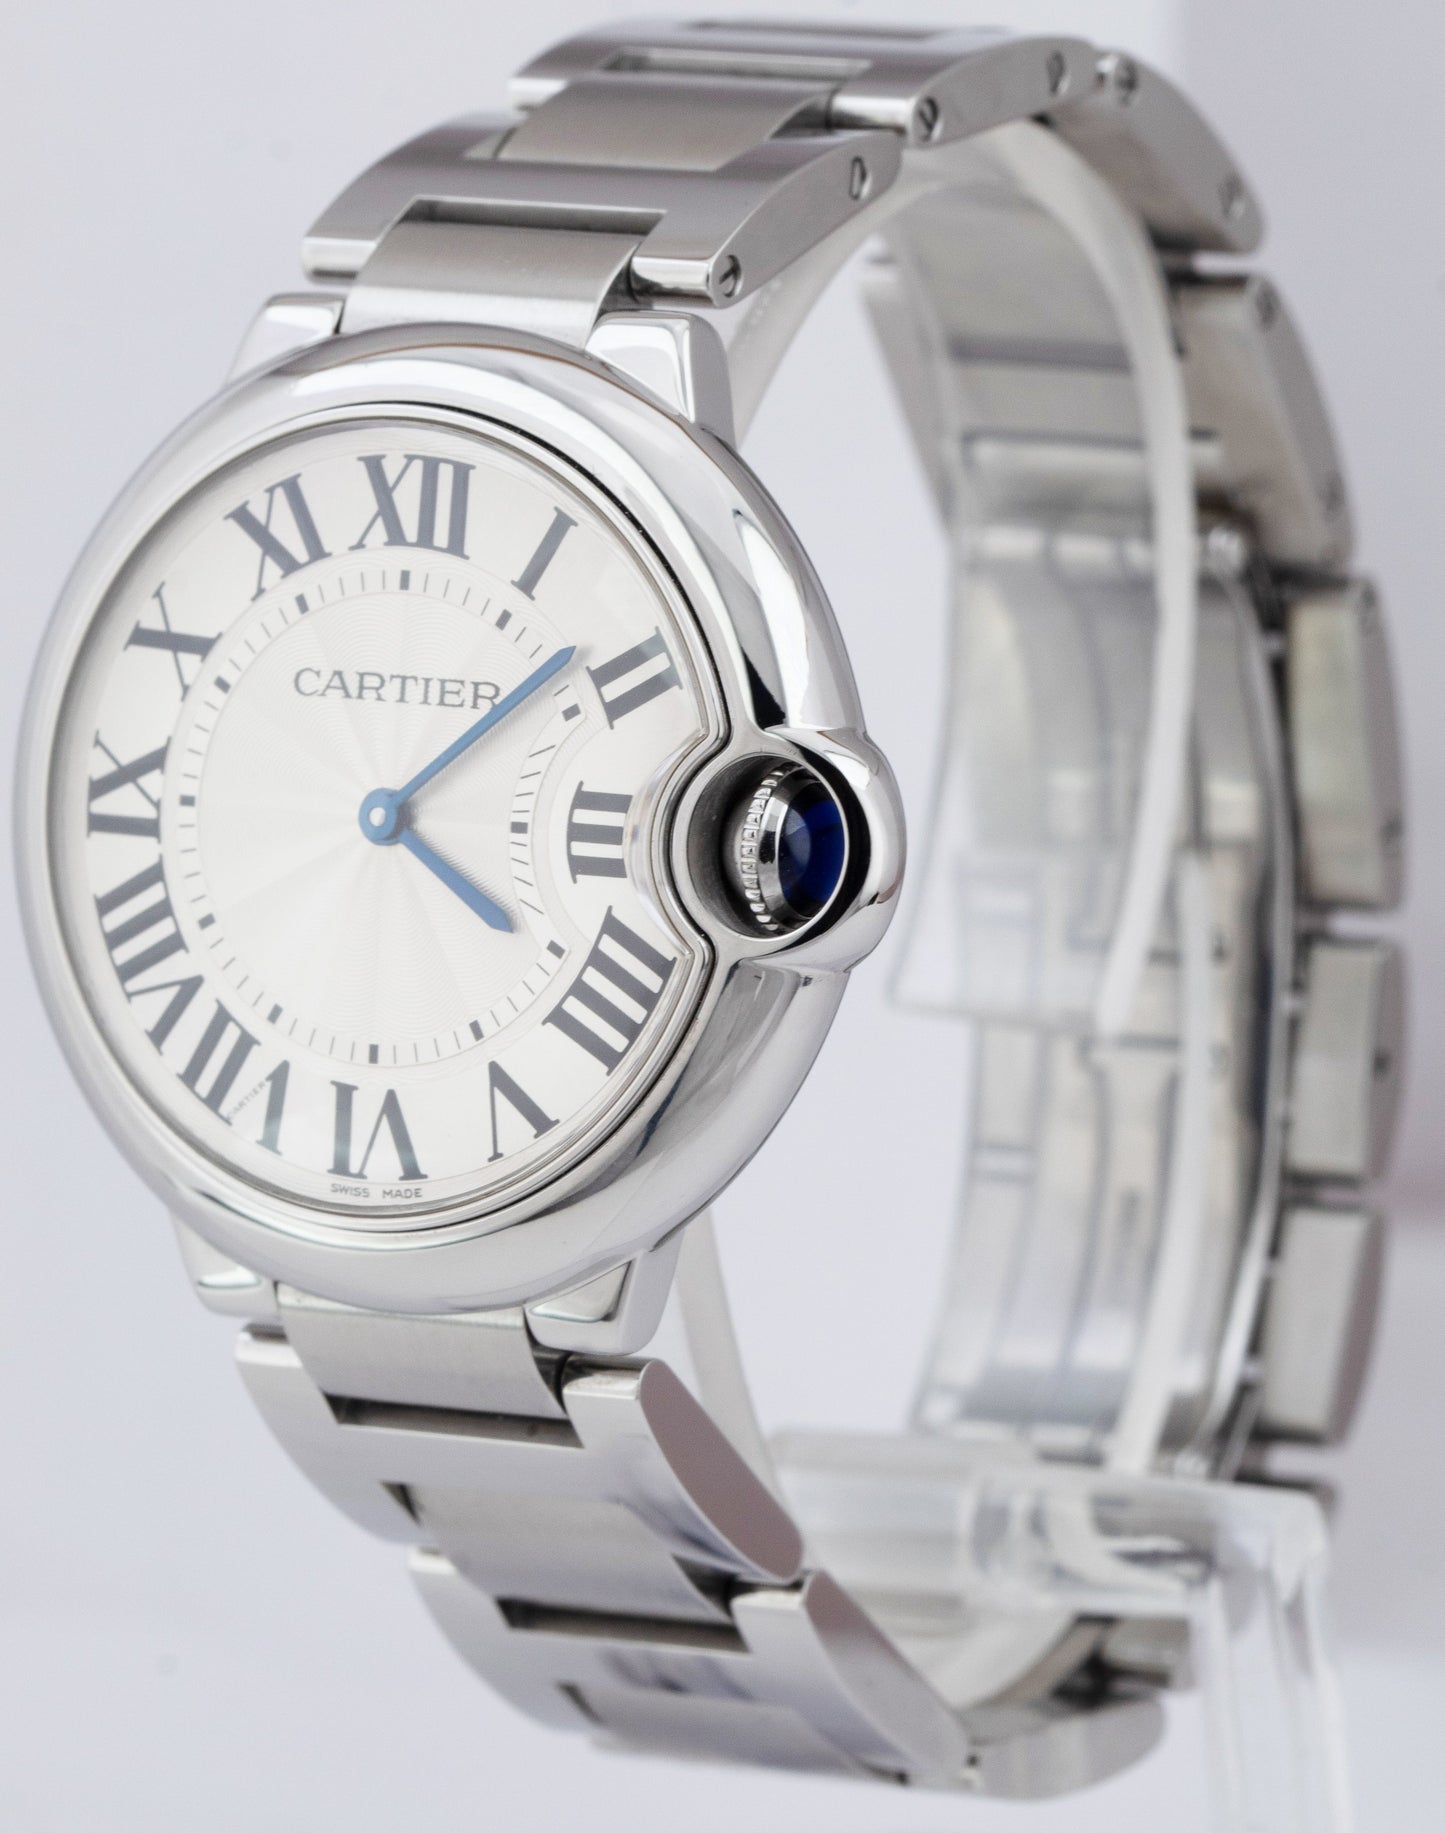 Cartier Ballon Bleu 36mm Stainless Steel Silver Quartz Watch 3005 / W69011Z4